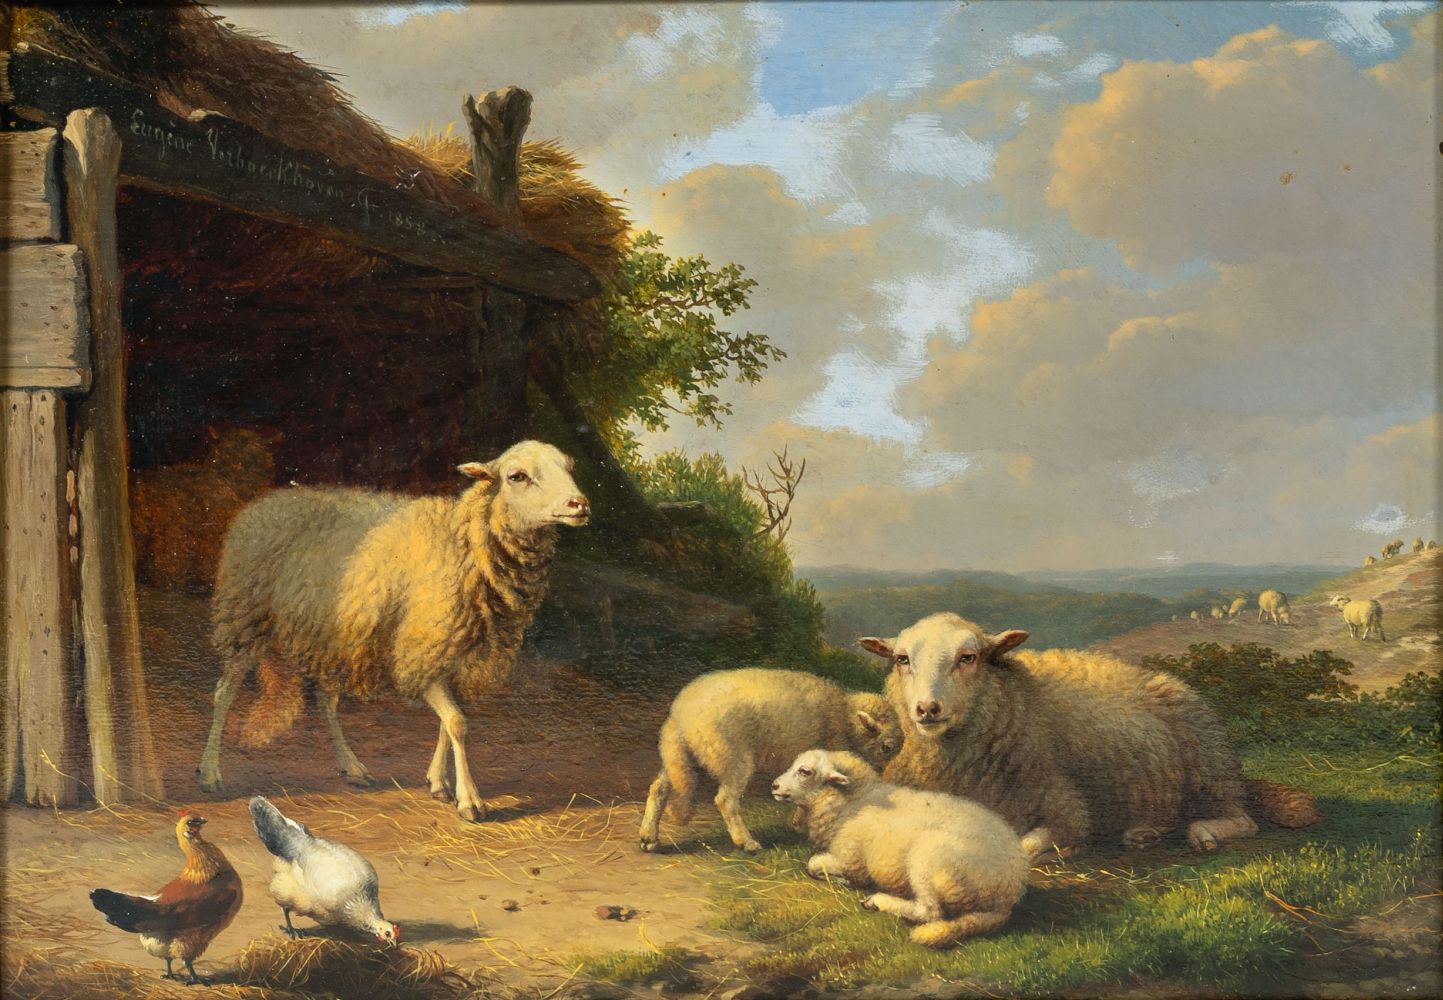 Schafe vor dem Stall